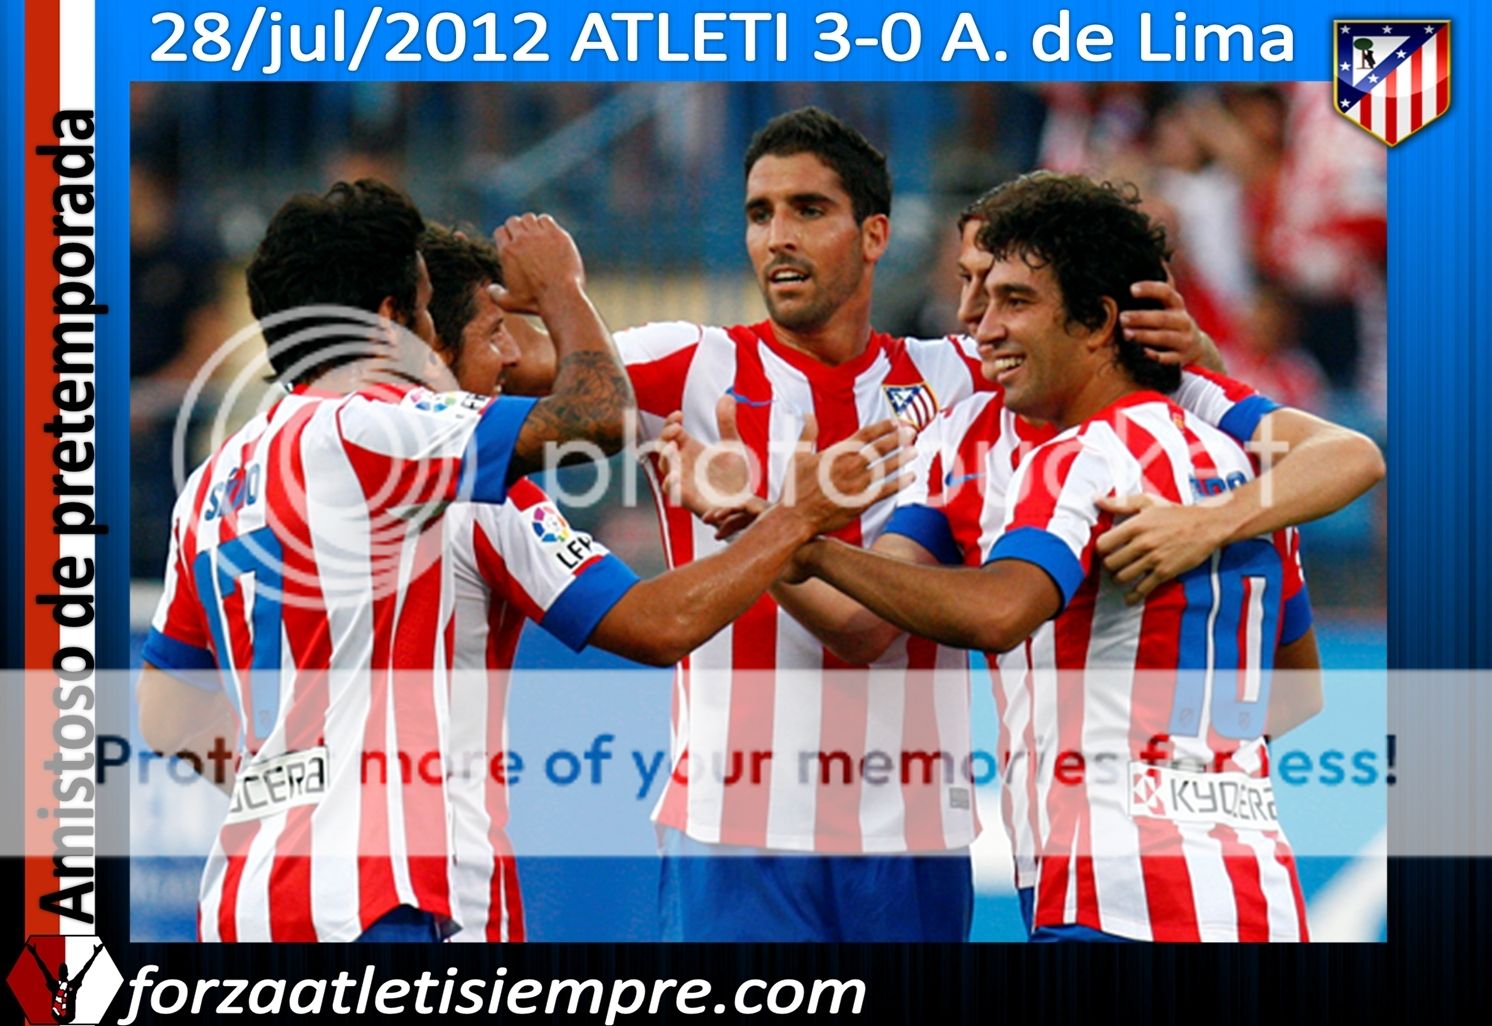 Atlético 3 - Alianza L. - El Atlético gana con claridad al Alianza de Lima 018Copiar-2